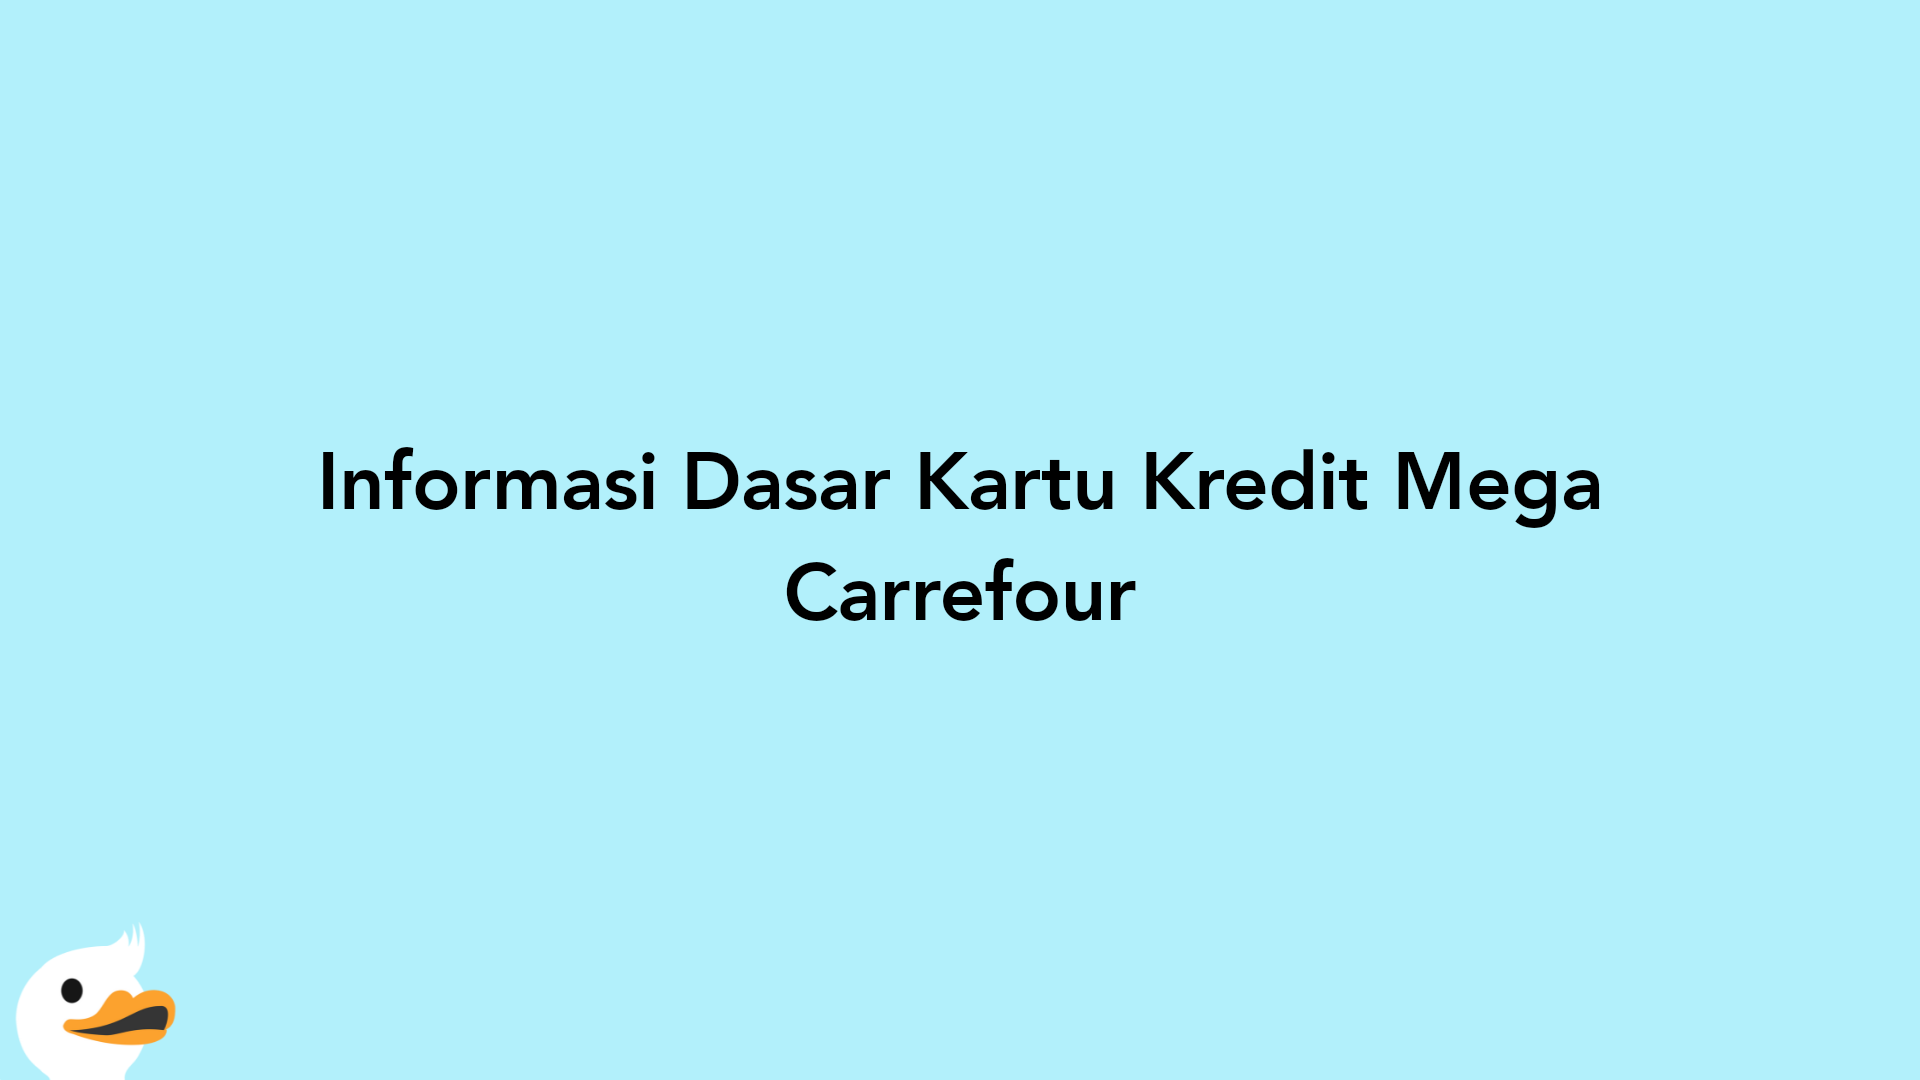 Informasi Dasar Kartu Kredit Mega Carrefour